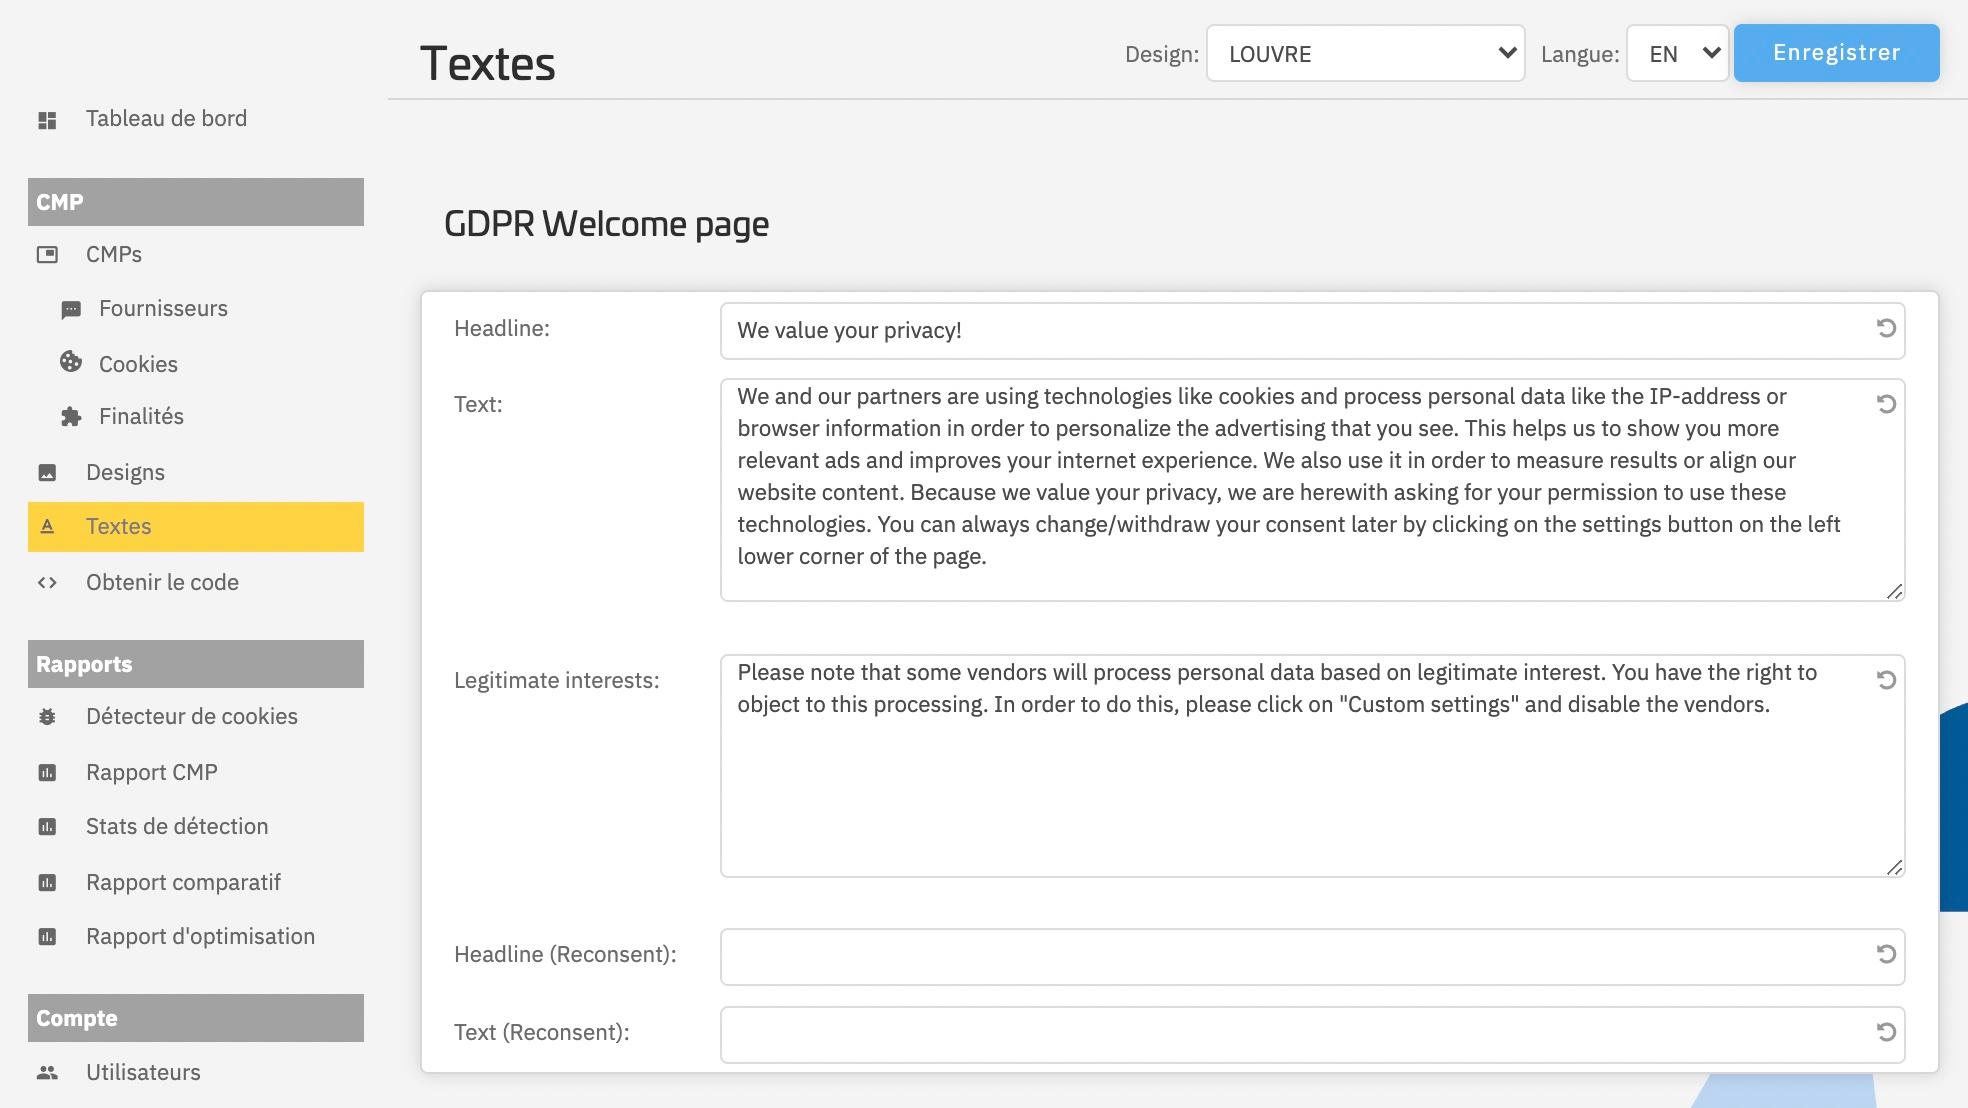 consentmanager - Des textes par défaut personnalisables fournis dans plus de 30 langues